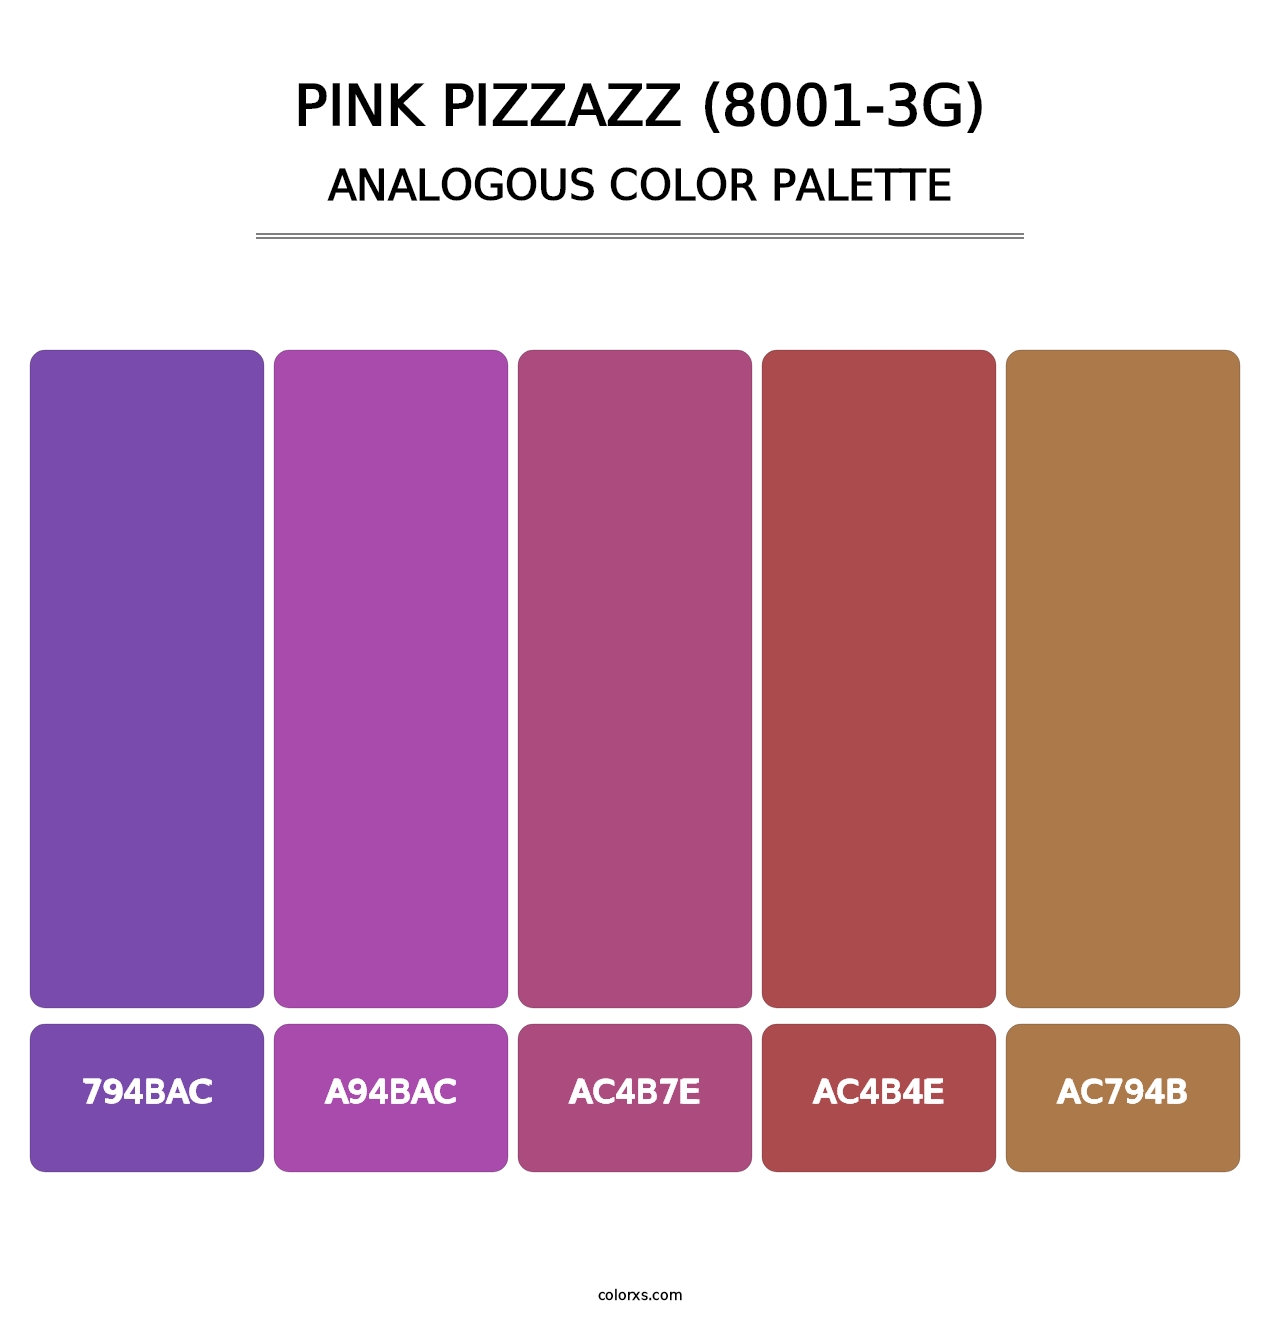 Pink Pizzazz (8001-3G) - Analogous Color Palette